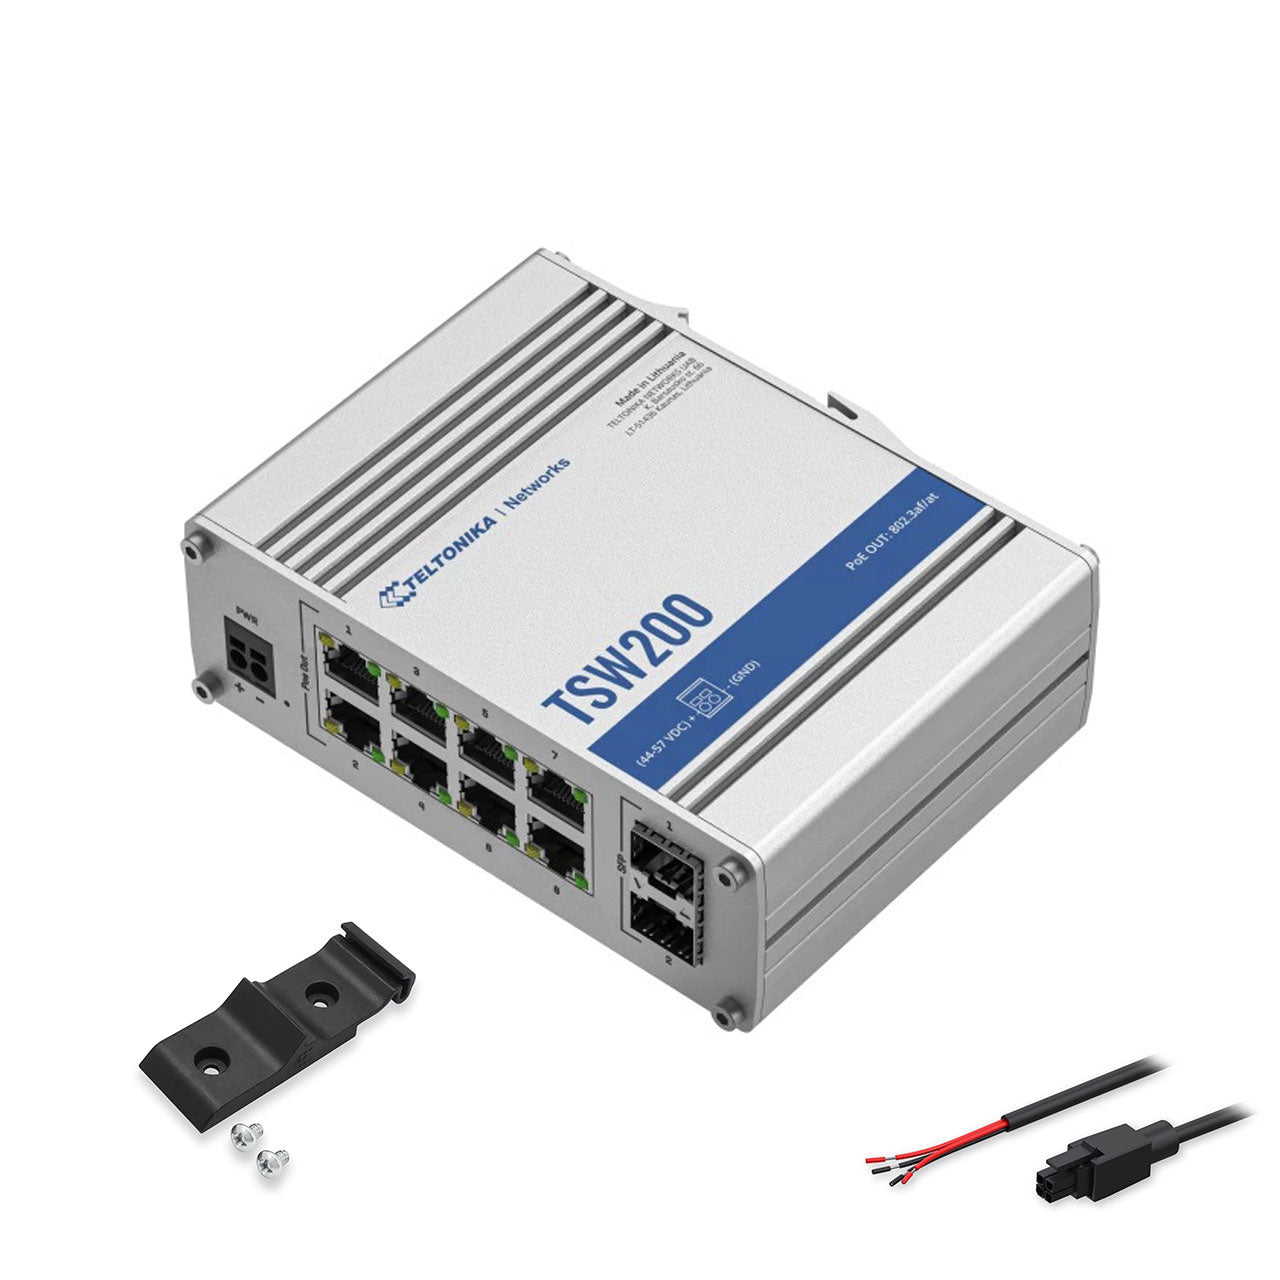 Teltonika TSW200000010 - TWS200 Unmannaged PoE+ switch 5x Gigabit Ethernet ports